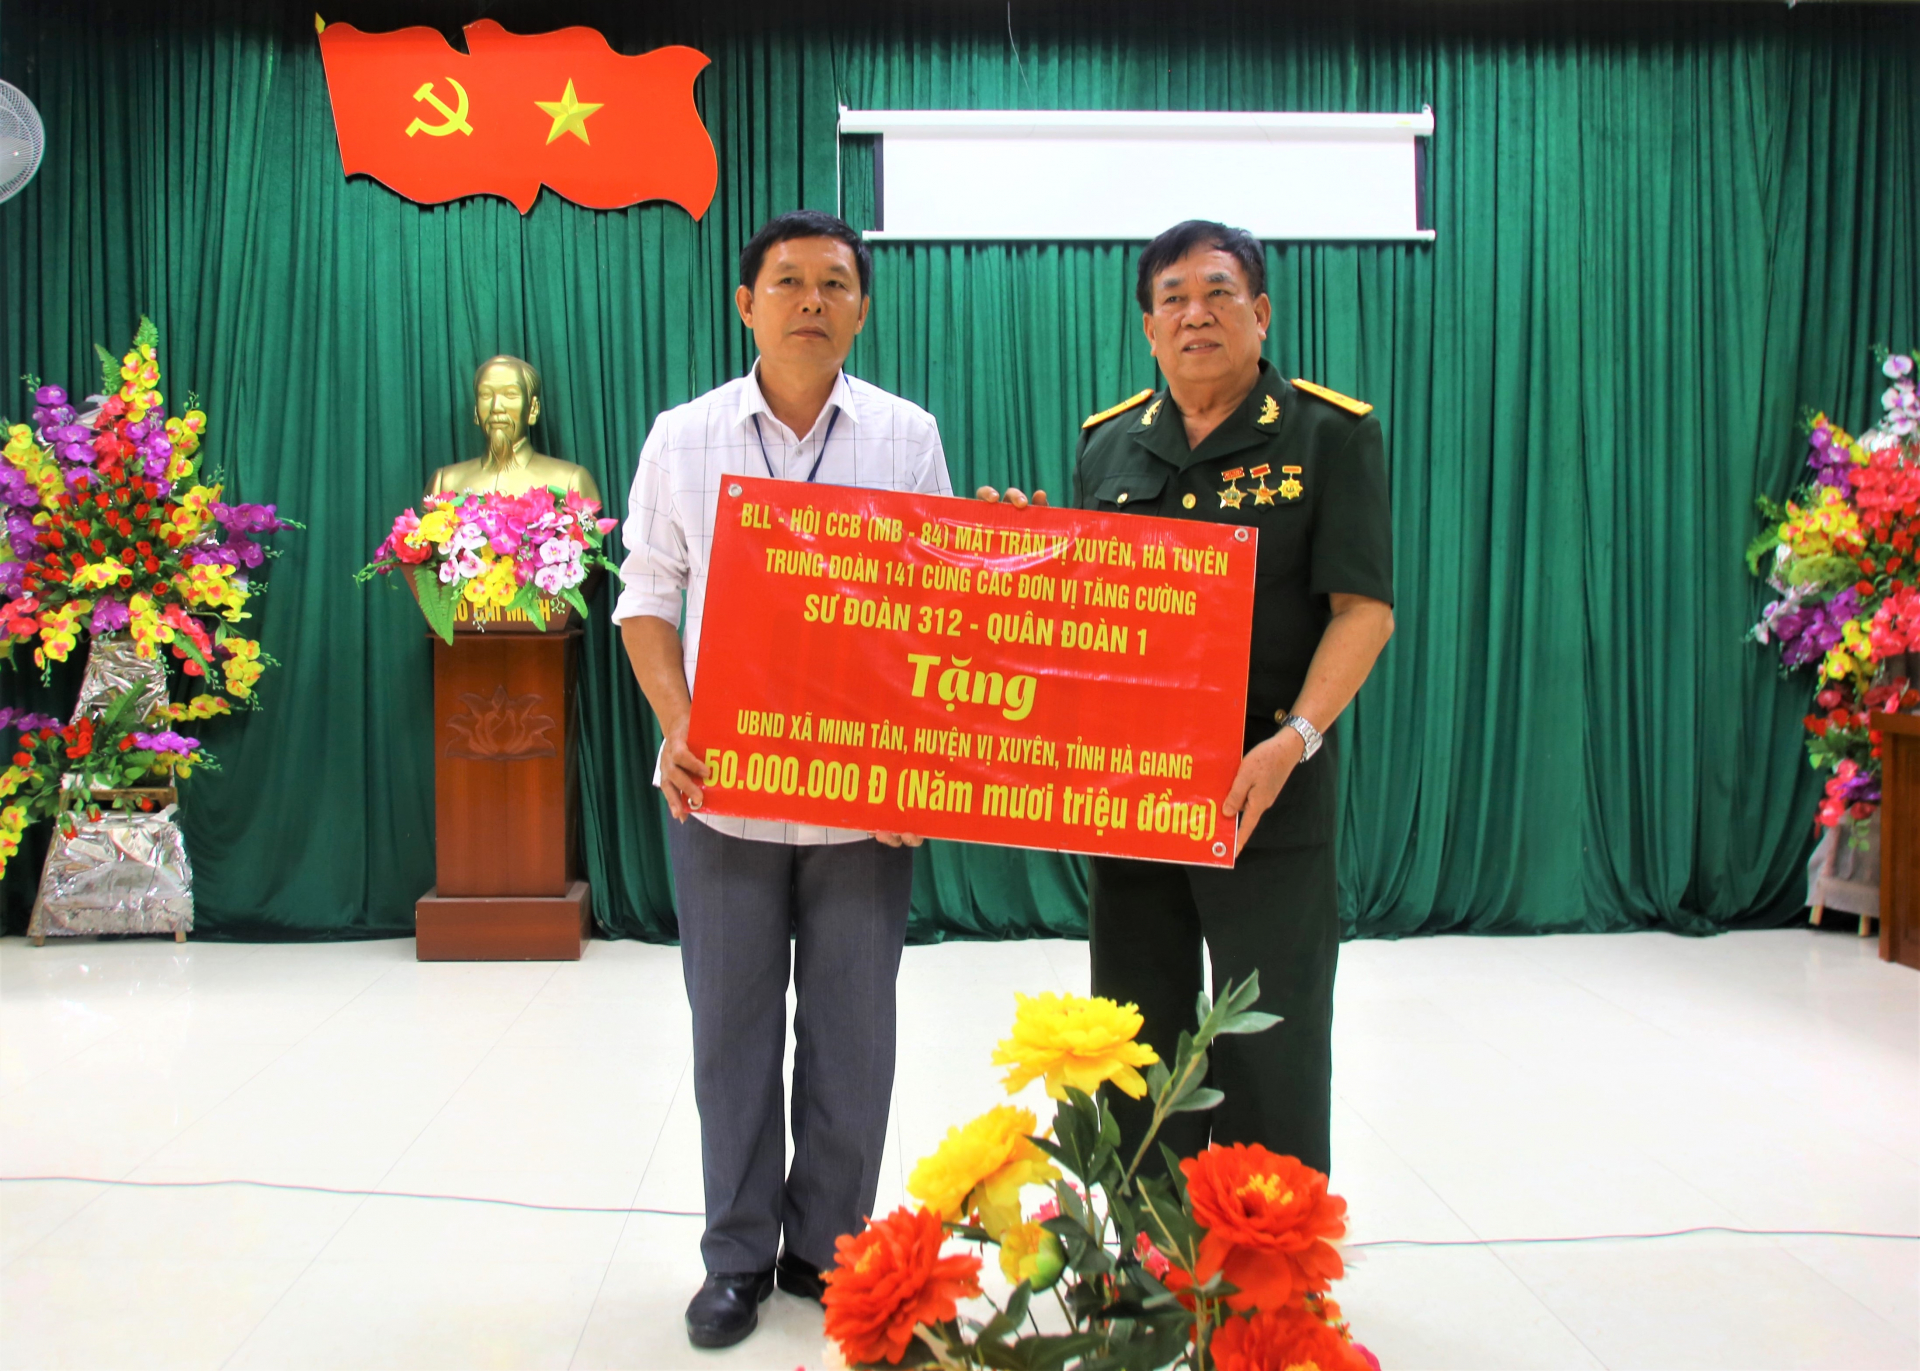 Ban liên lạc Hội CCB Trung đoàn 141 mặt trận Vị Xuyên trao tiền ủng hộ xây dựng Đền thờ tưởng nhớ các AHLS cho UBND xã Minh Tân.